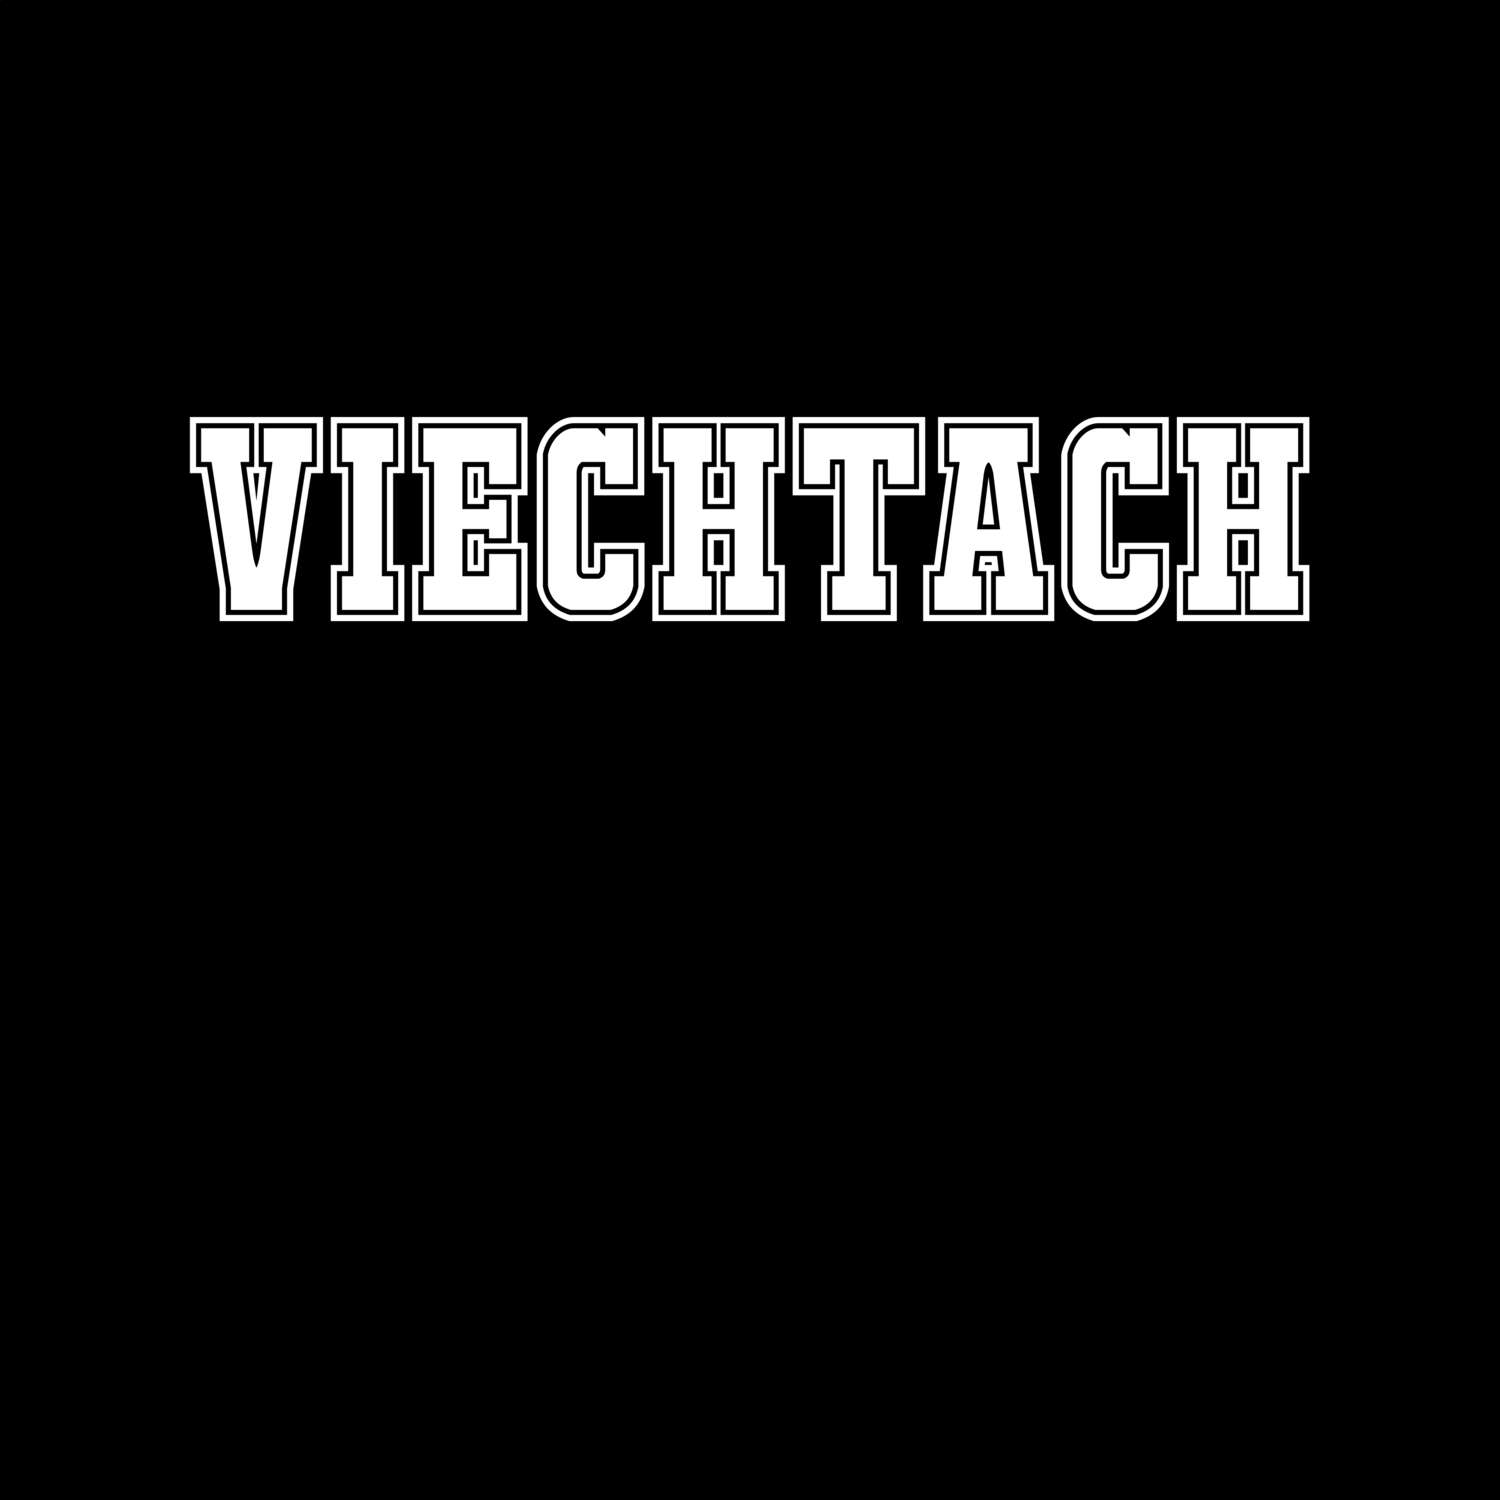 Viechtach T-Shirt »Classic«